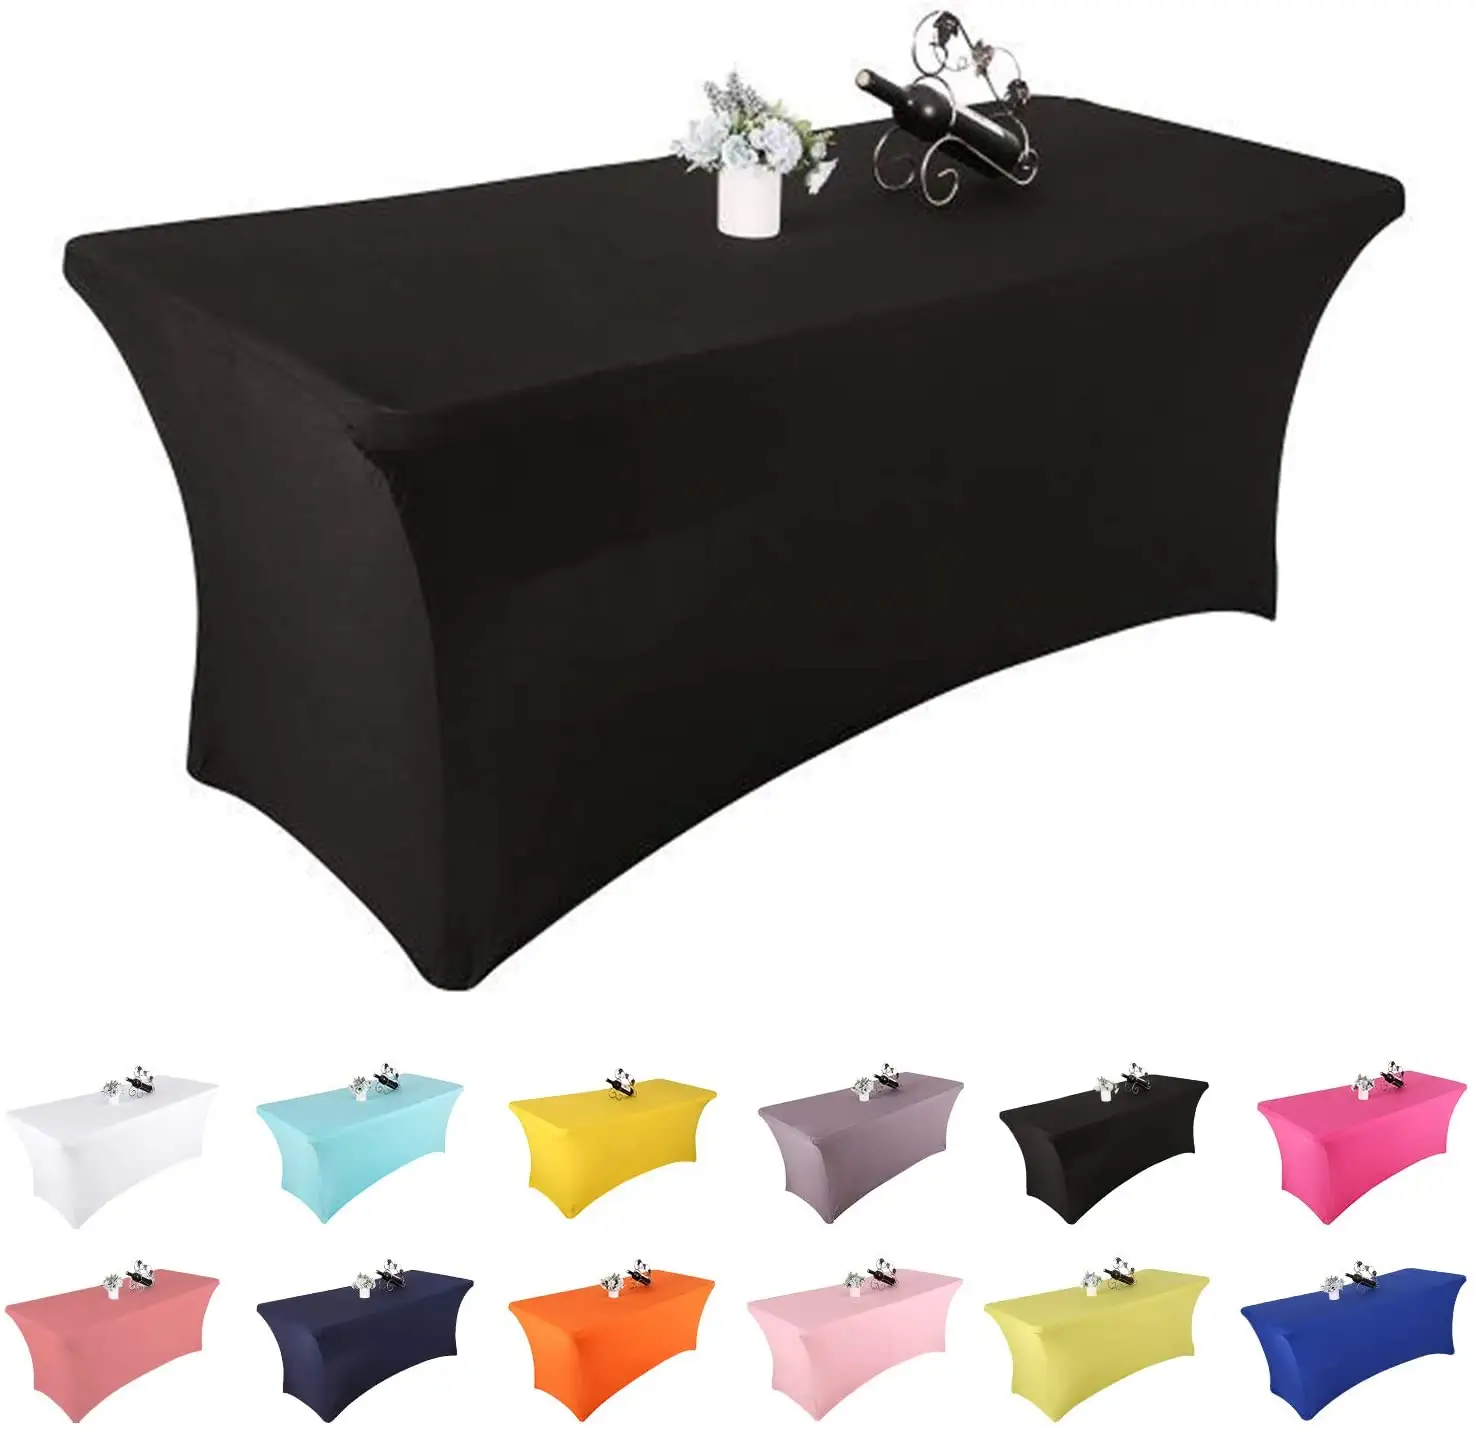 Reador perakendeci Spandex masa örtüleri için 6 ft dikdörtgen masa gömme streç Polyester masa örtüsü kirpik yatak örtüsü masa Toppers